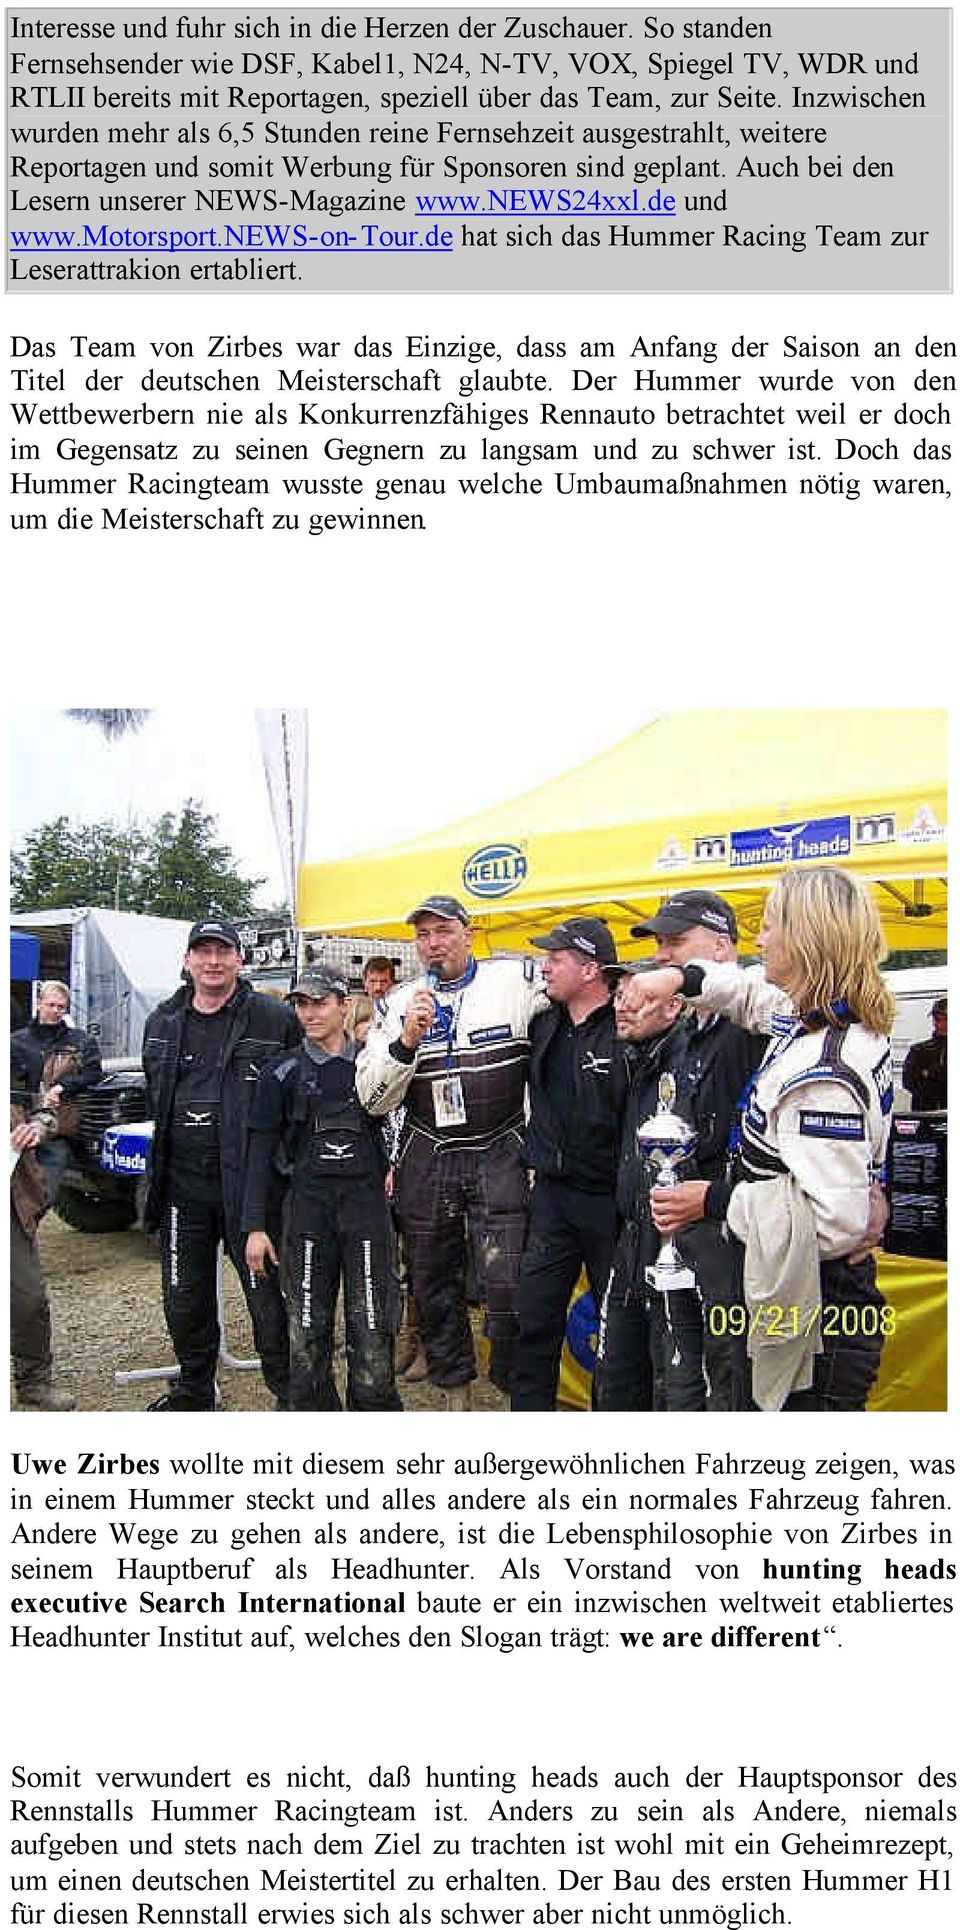 de und www.motorsport.news-on-tour.de hat sich das Hummer Racing Team zur Leserattrakion ertabliert.